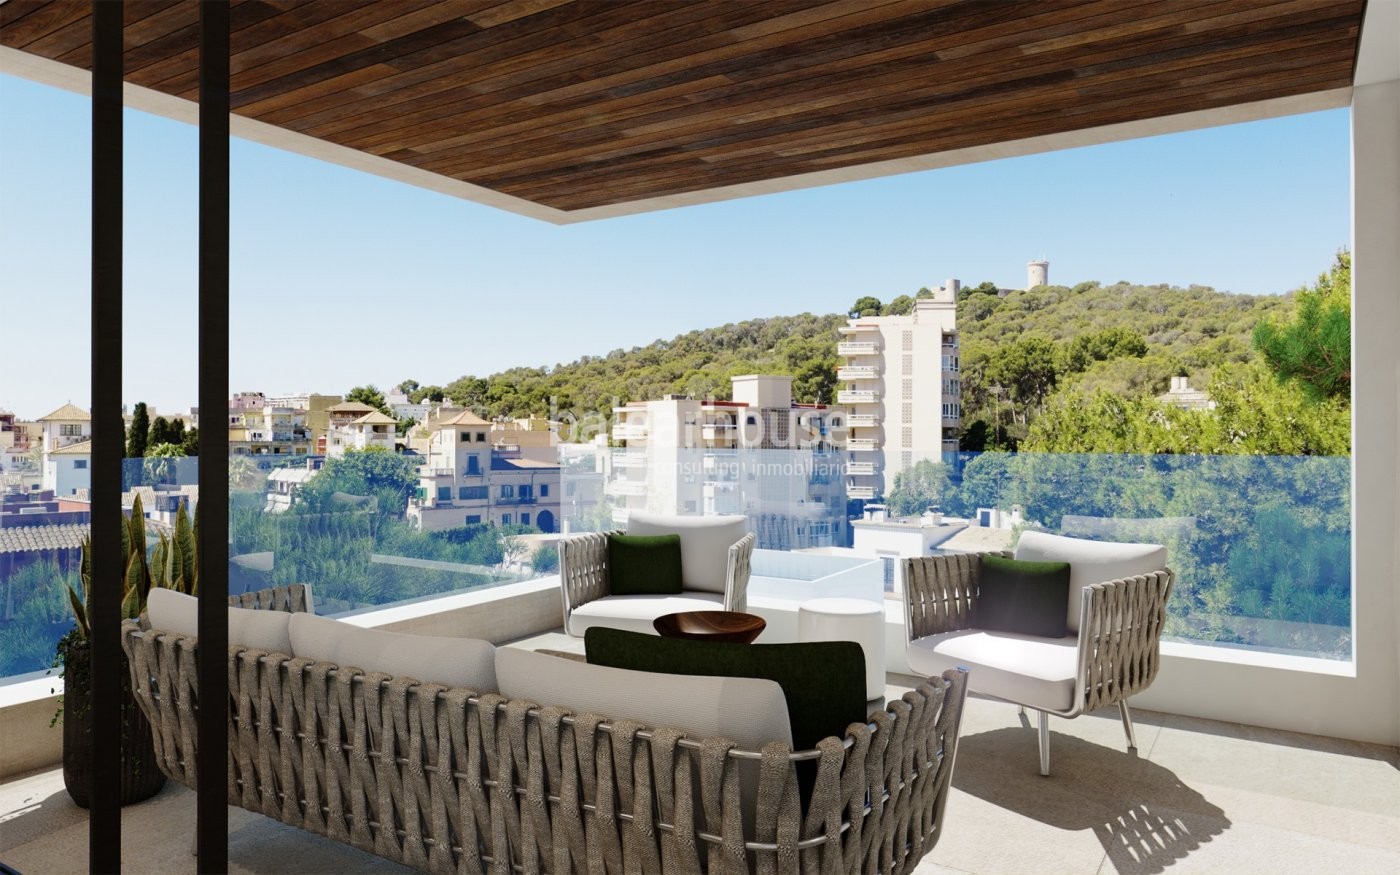 Neues modernes Wohnprojekt in Palma mit herrlichem Pool und Gartenanlage